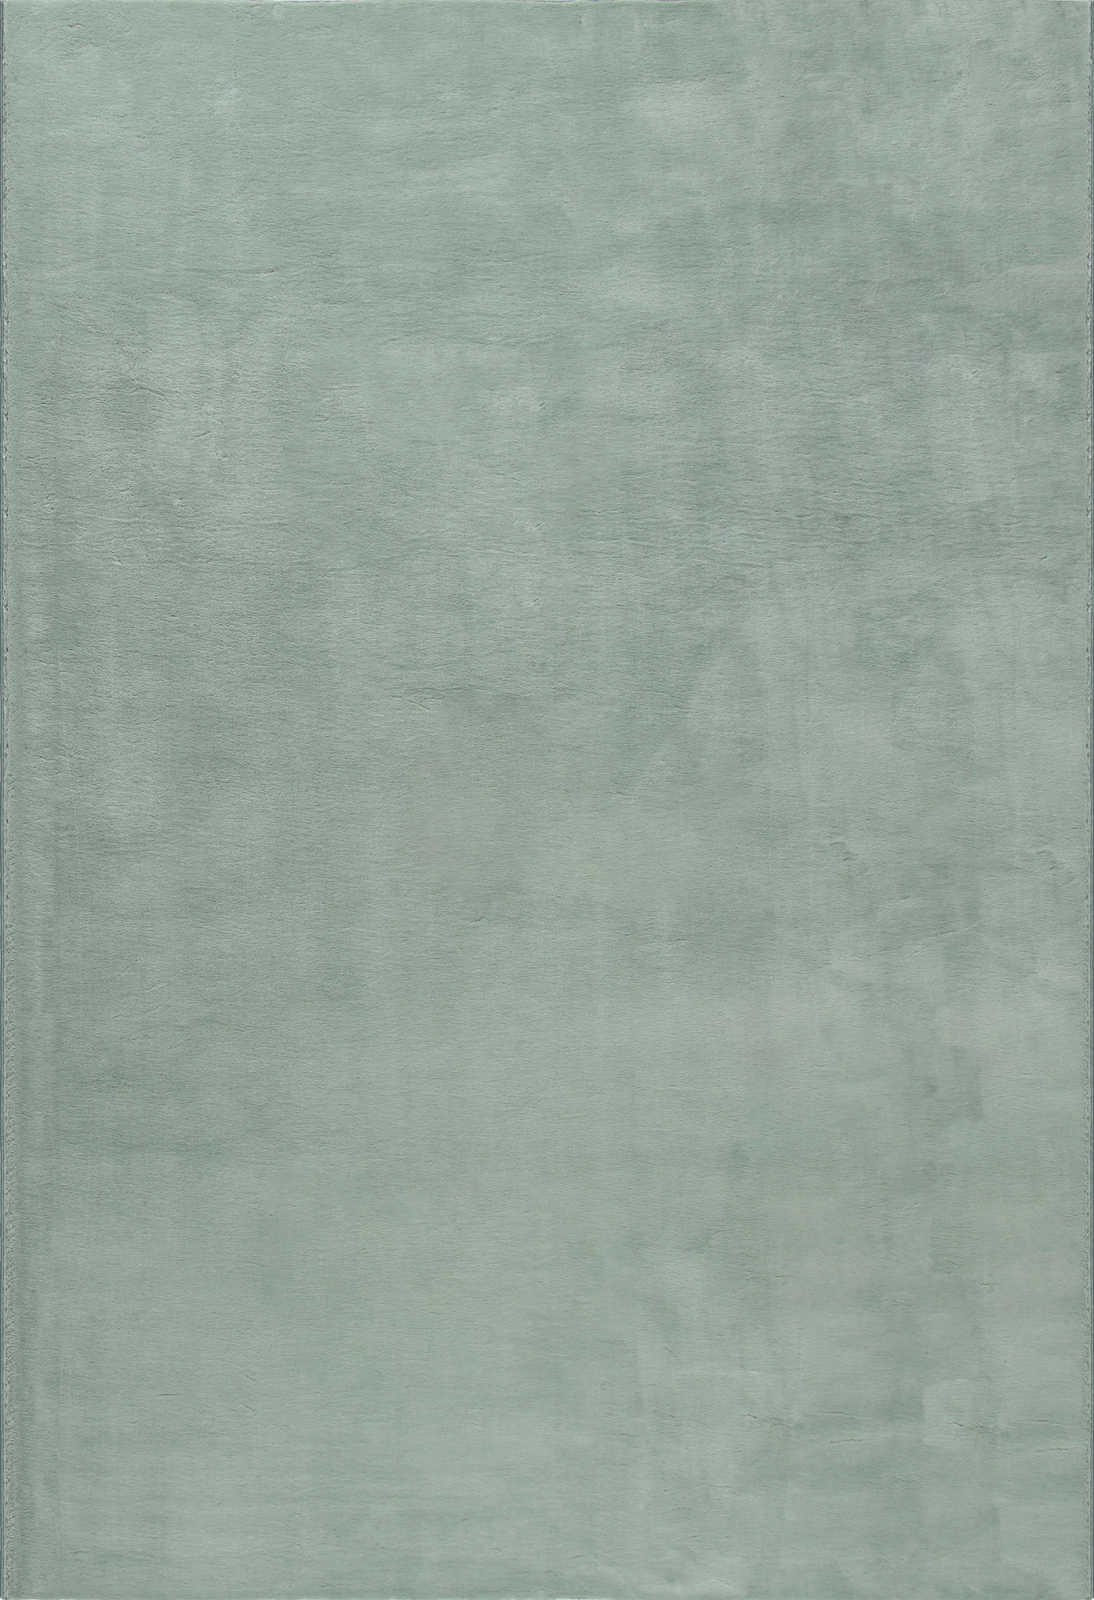             Zacht hoogpolig tapijt in zachtgroen - 110 x 60 cm
        